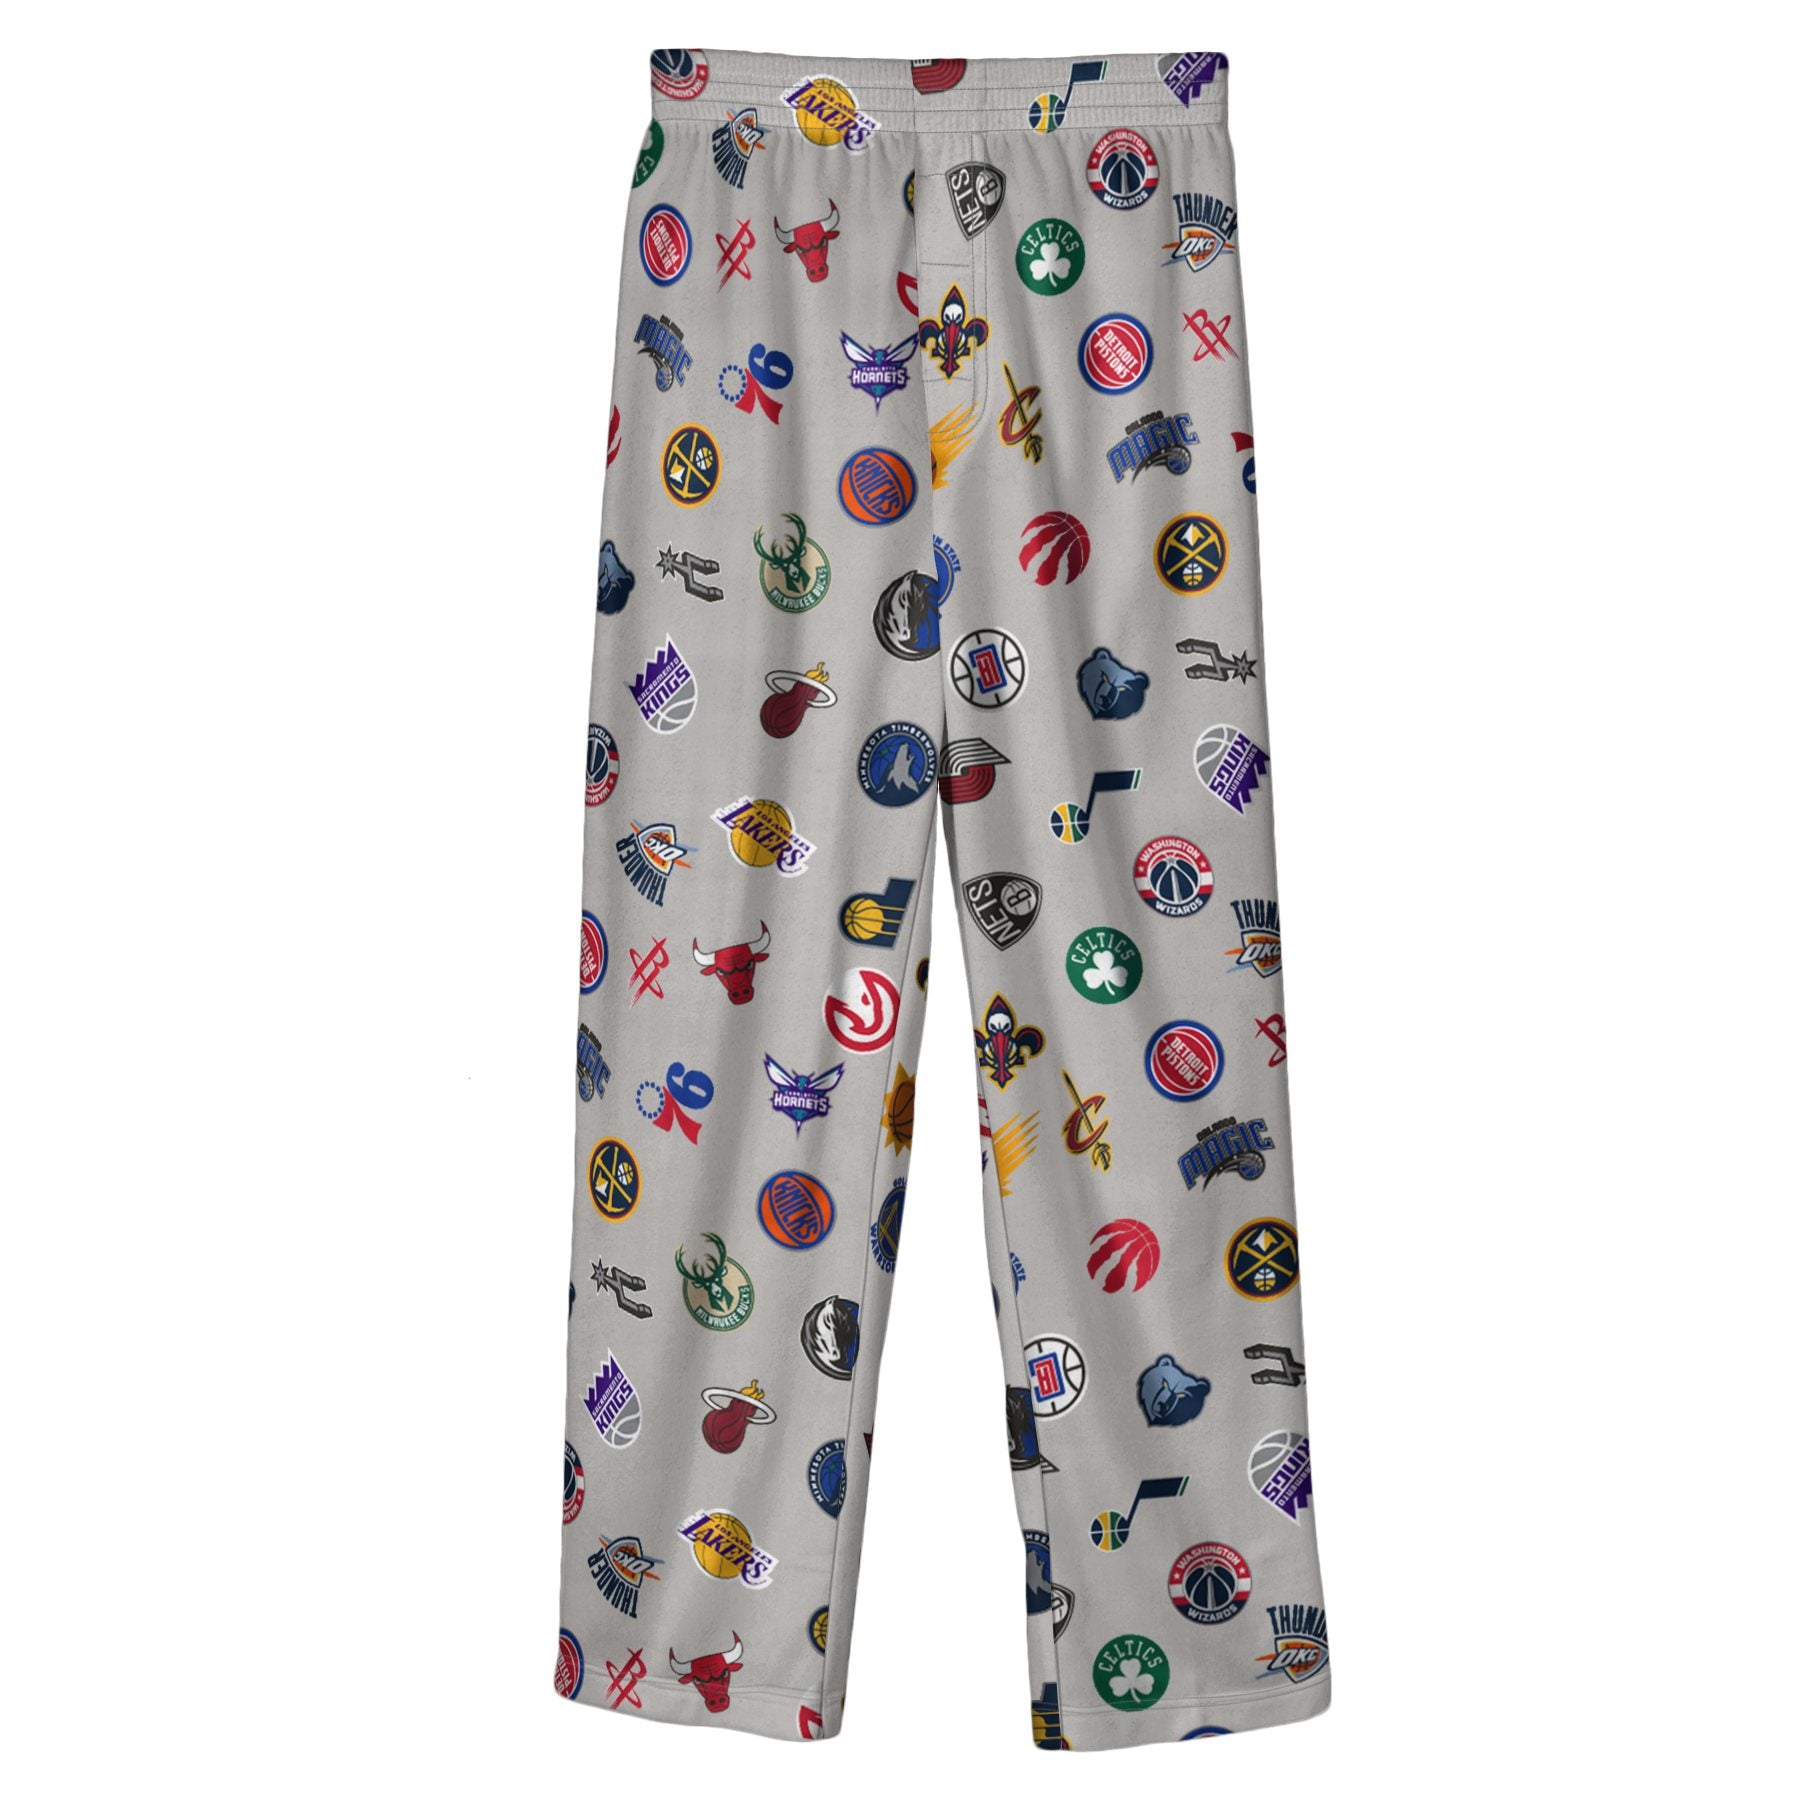 NBA Pajama pants